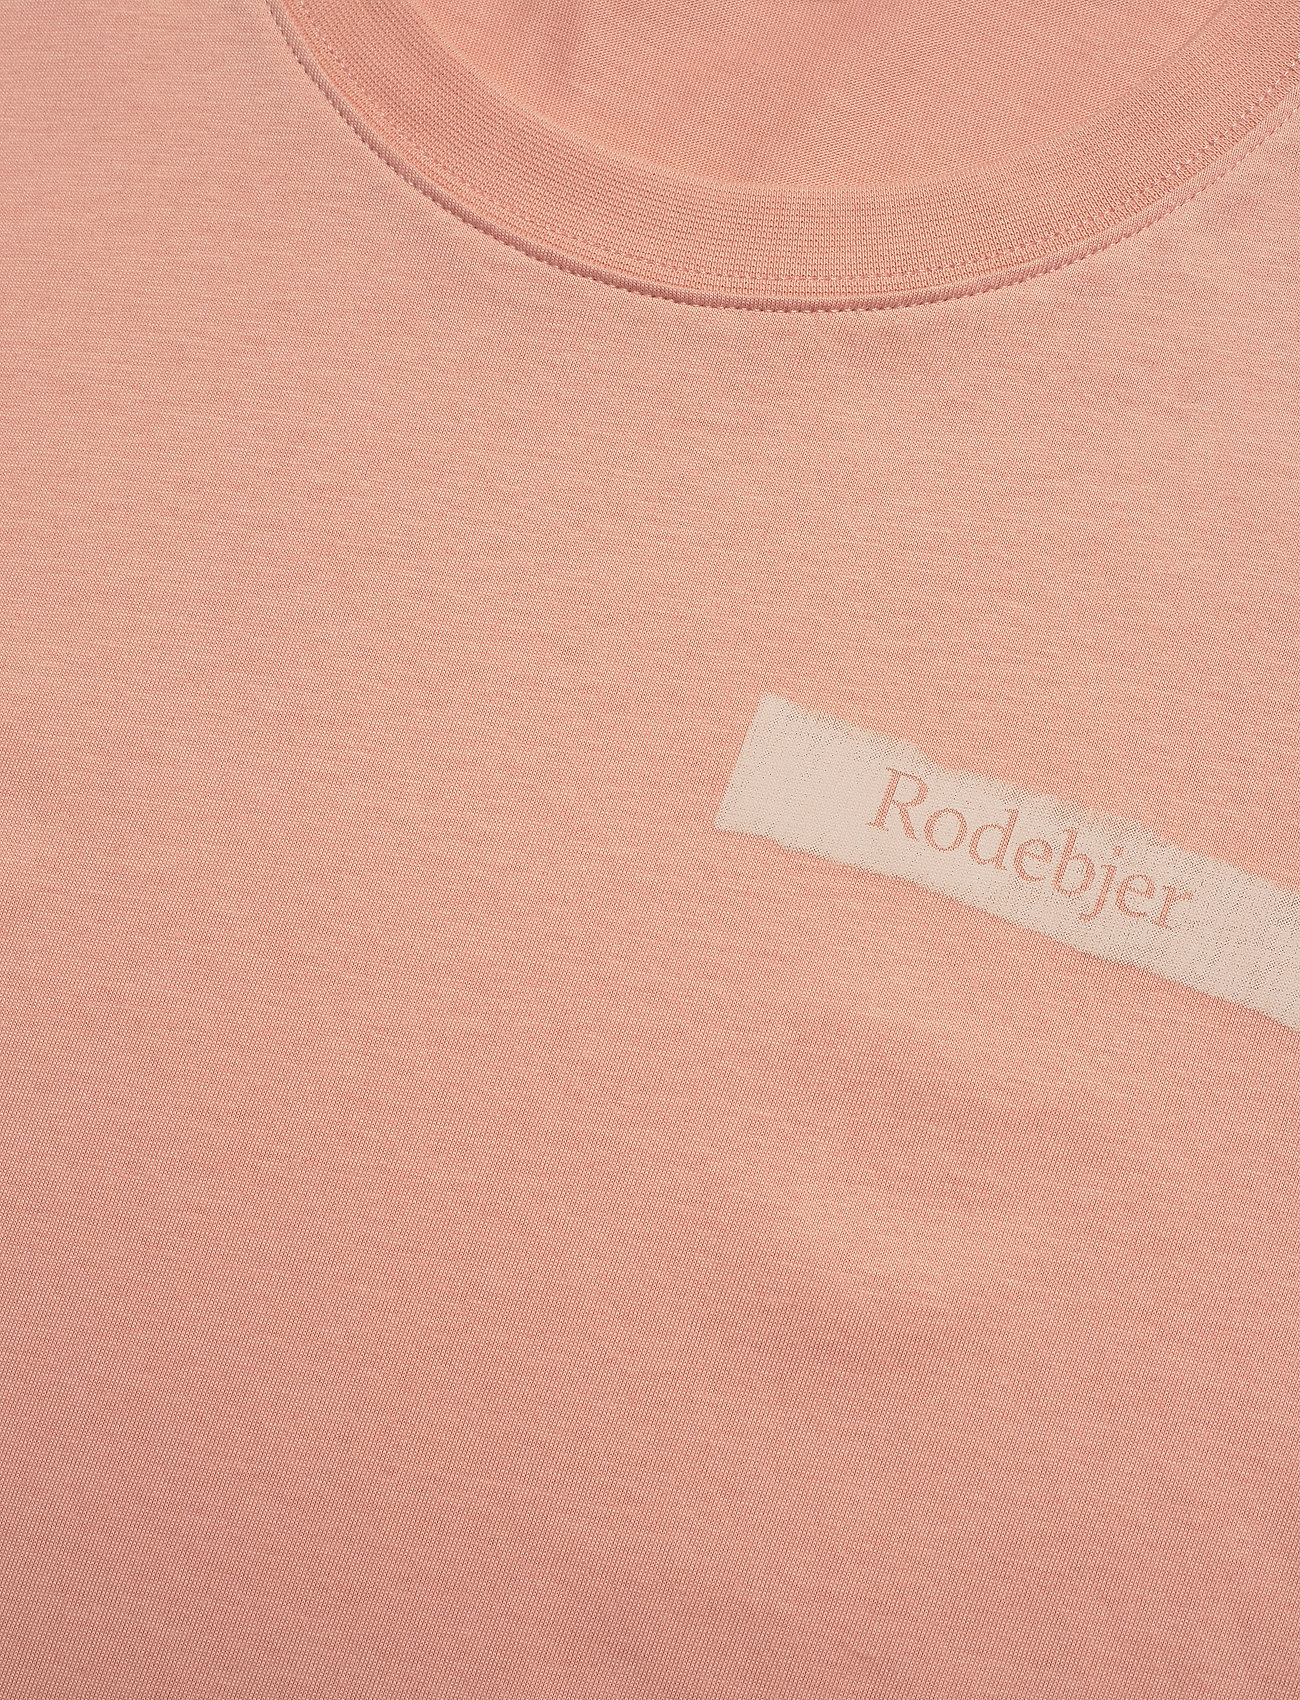 RODEBJER - RODEBJER TURIYA PAPERLOGO - t-shirts - blush - 2